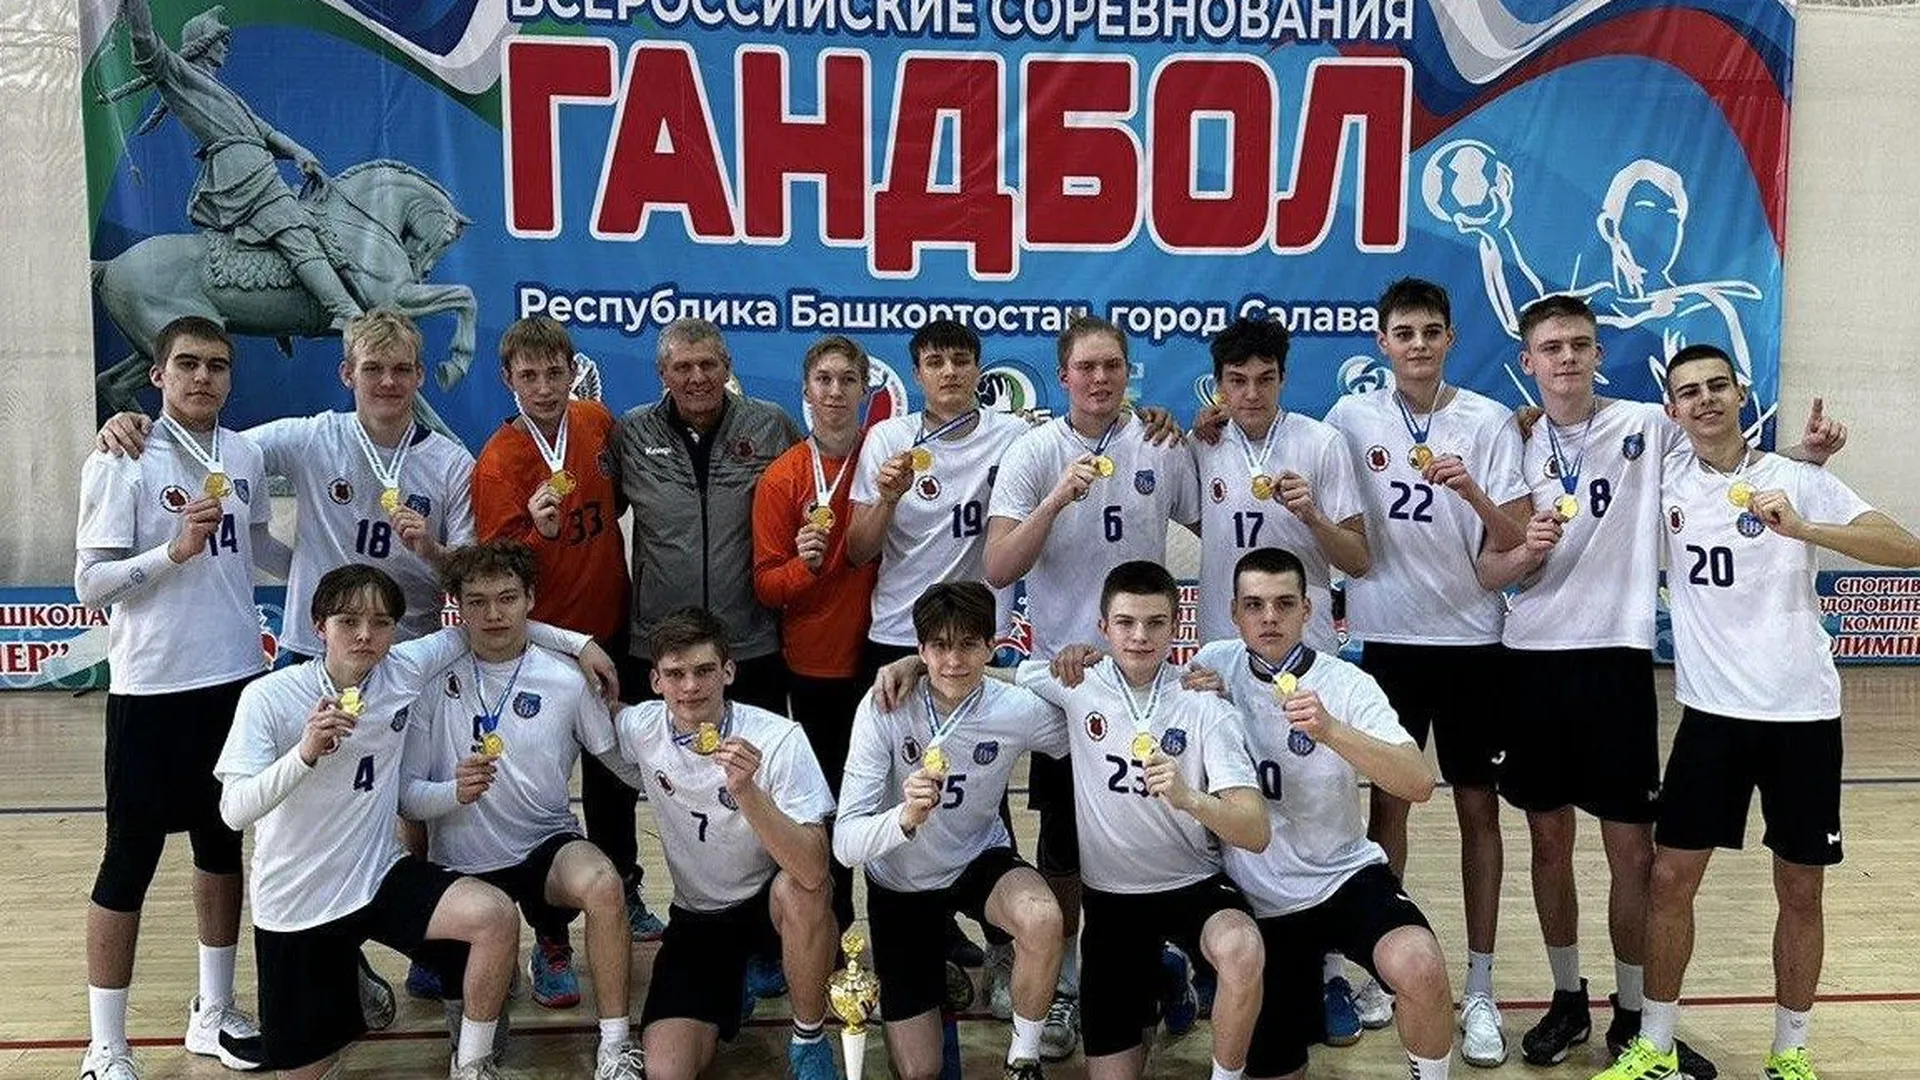 Сборная Подмосковья стала победителем национального первенства по гандболу